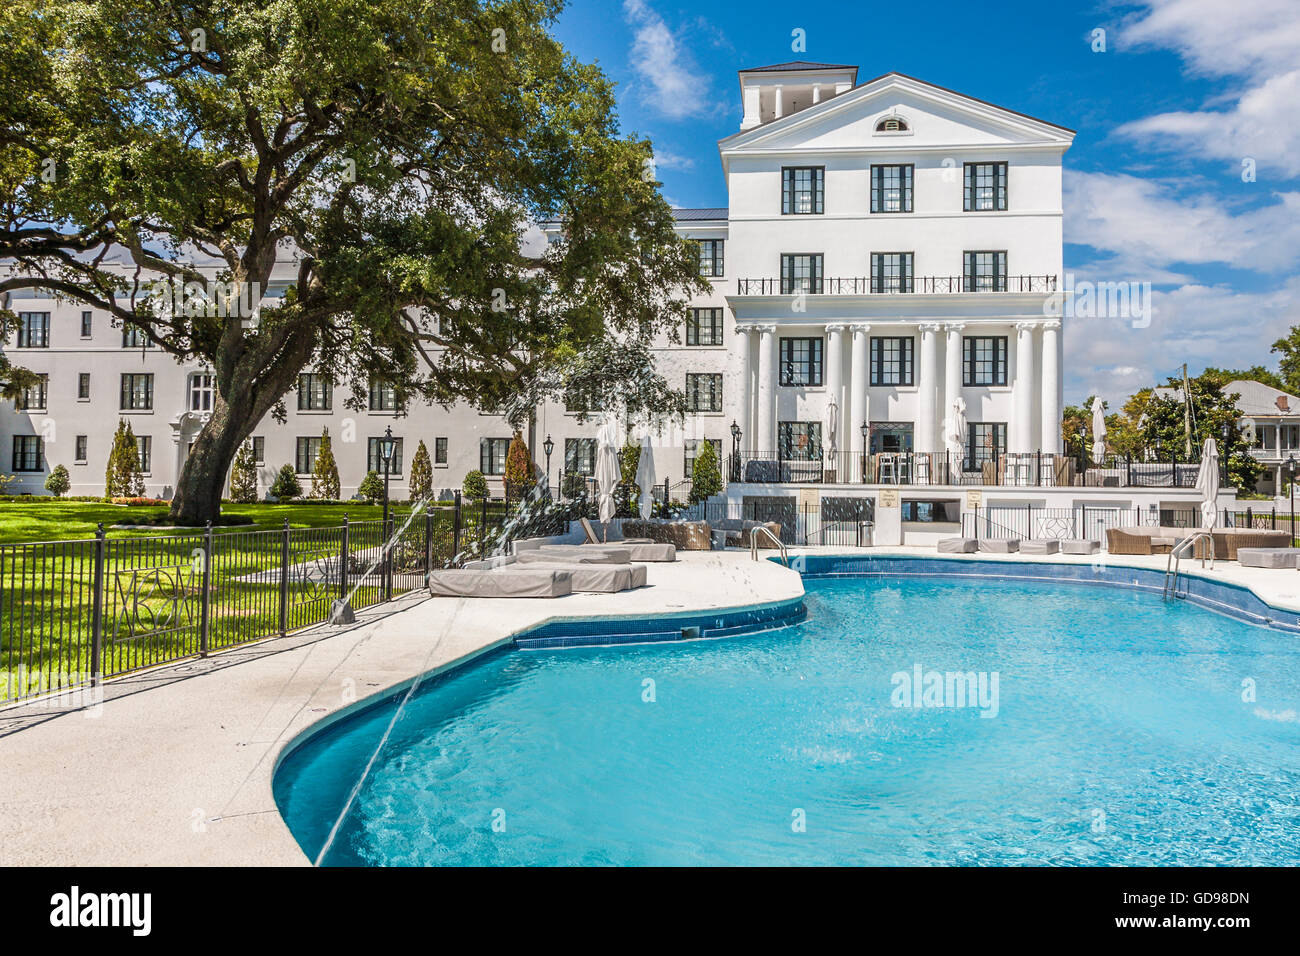 Grande piscine claire en face de l'hôtel White House historique restauré à Biloxi, au Mississippi Banque D'Images